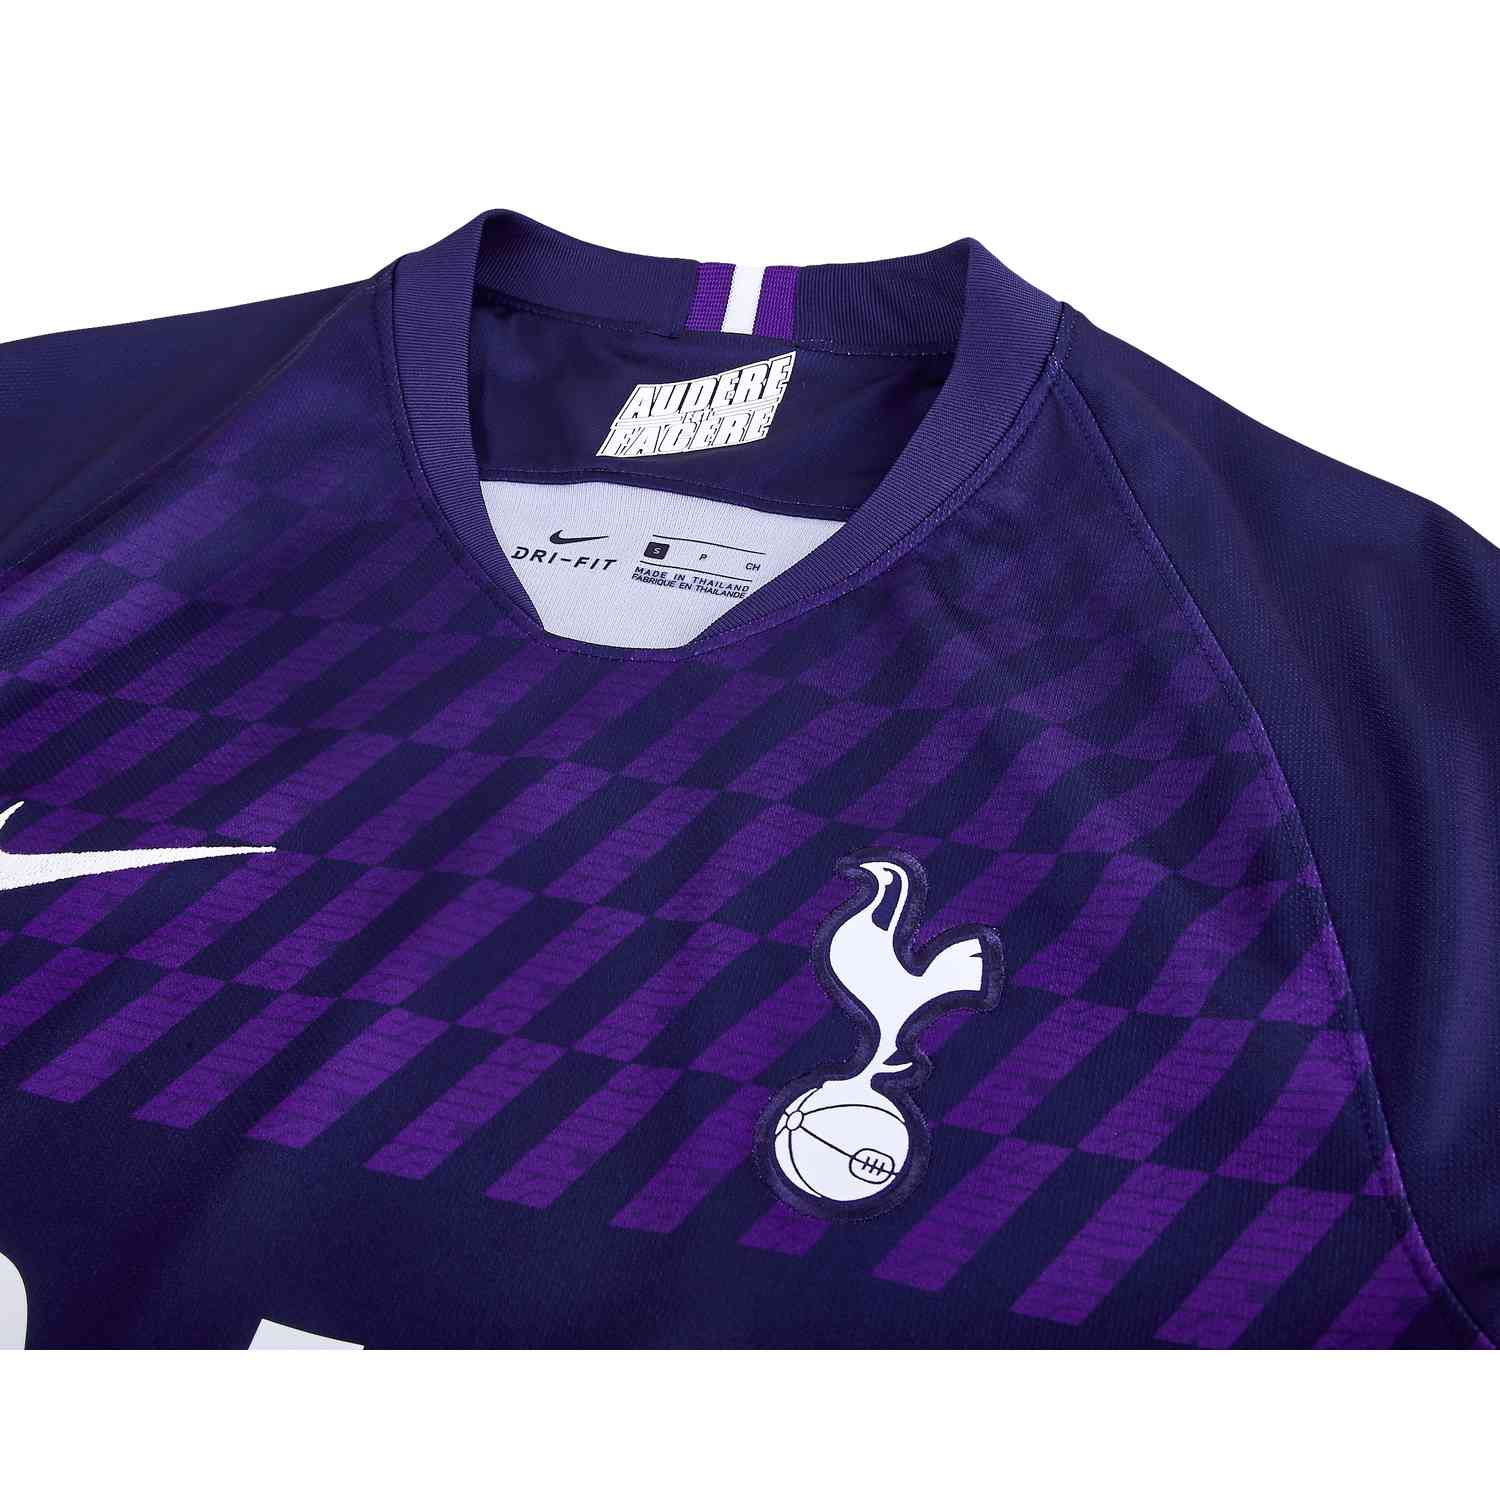 Nike Son Heung-min Tottenham Hotspur Away Jersey 19/20 RV7008738 – buy  newest cheap soccer jerseys